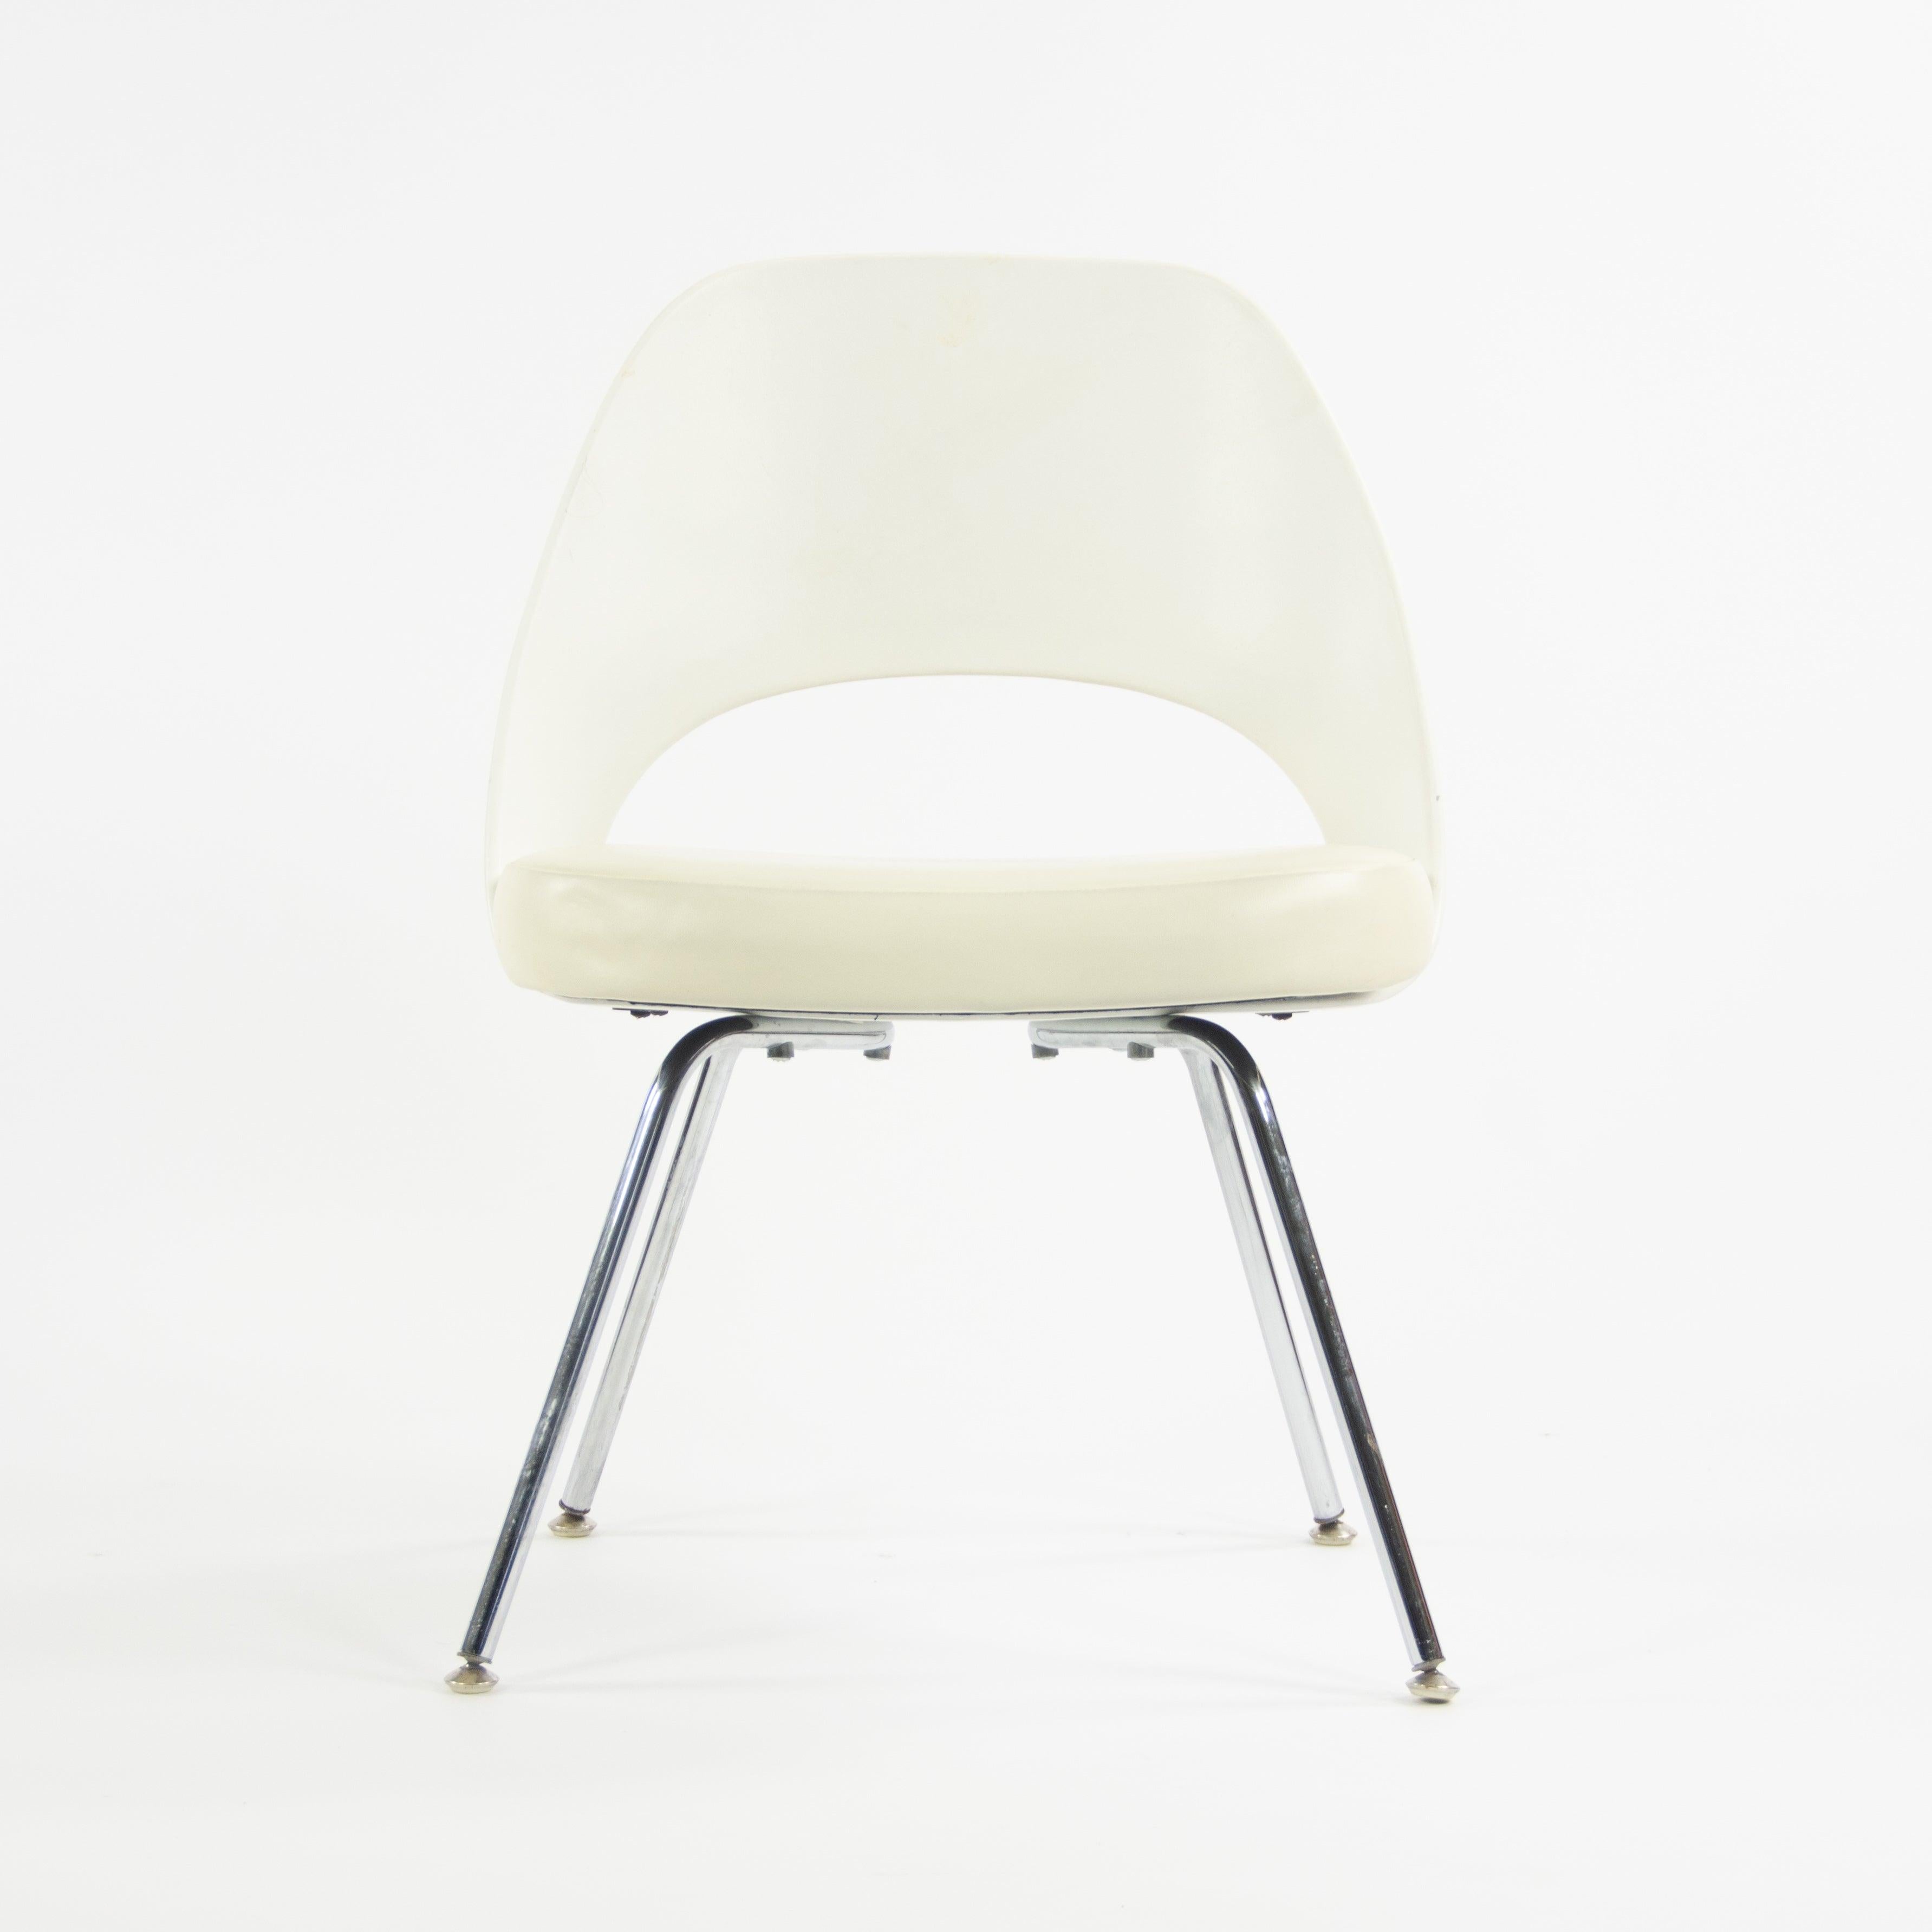 Zum Verkauf steht ein fantastisches Set von (separat verkauften) Eero Saarinen Executive Armless Stühlen mit weißer Vinylpolsterung und verchromten Gestellen, hergestellt von Knoll. Diese Stühle haben keine gepolsterte Rückenlehne, sondern eine